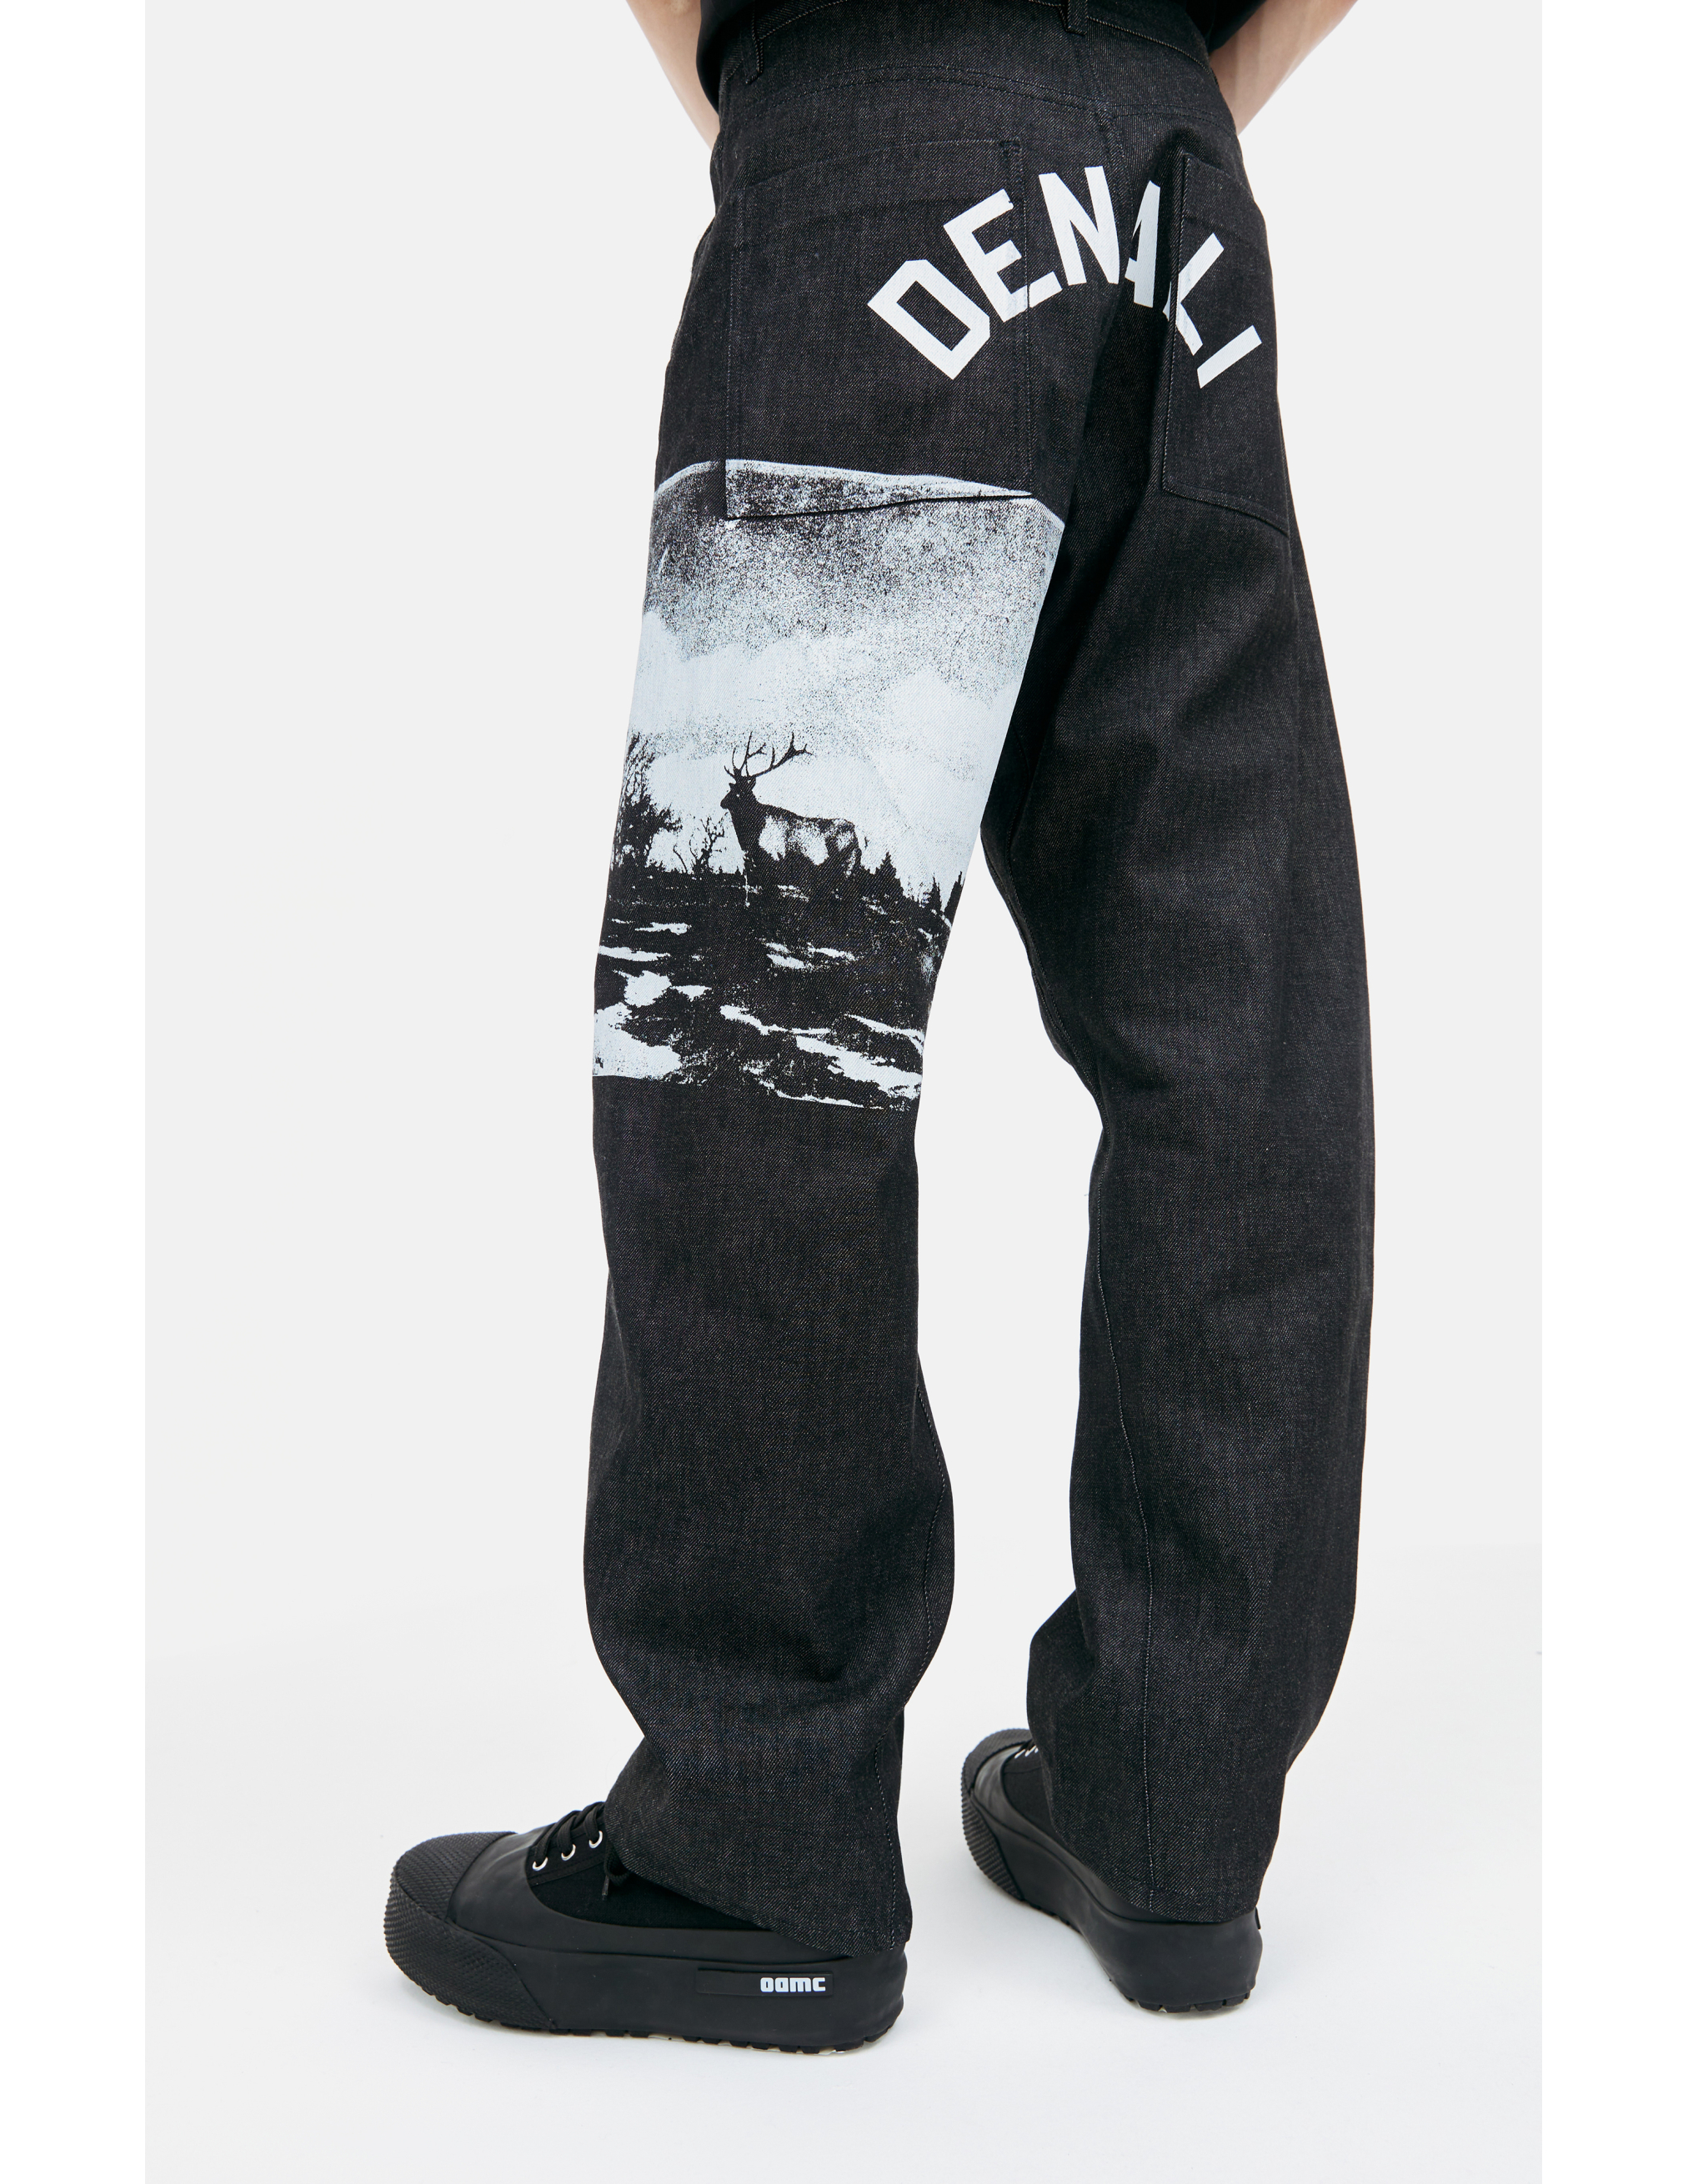 Прямые джинсы Denali с принтом OAMC 23A28OAY15B/COT00900/005, размер 30;32 23A28OAY15B/COT00900/005 - фото 4